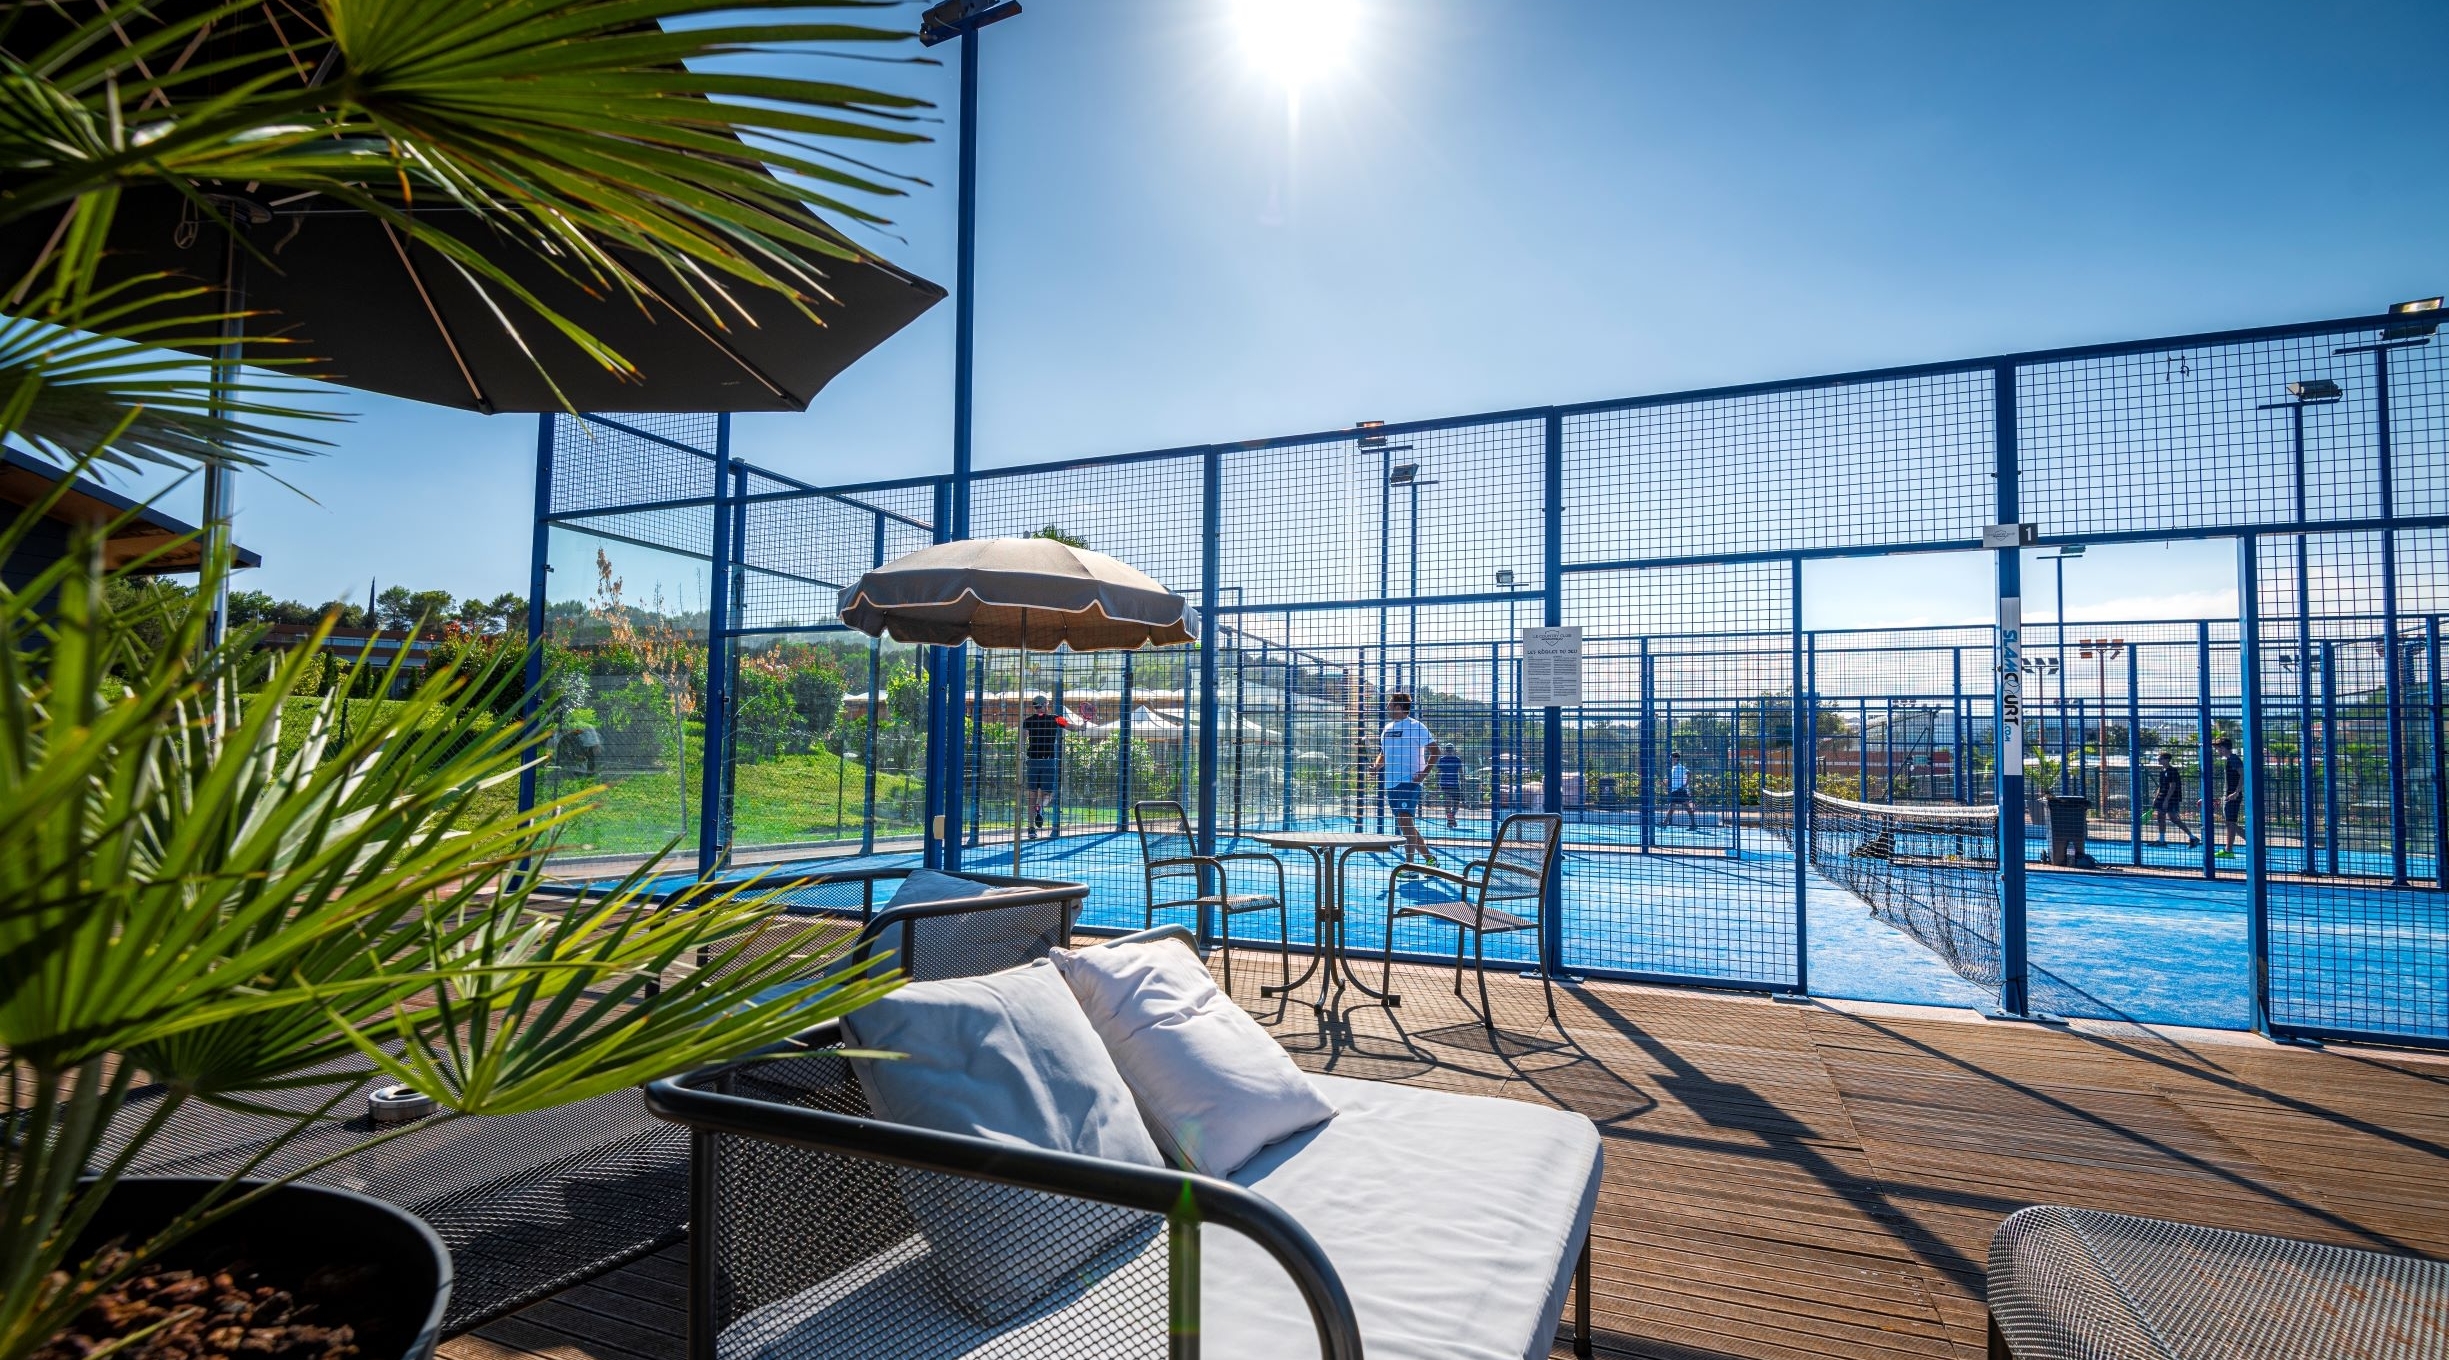 Votre team building sportif clés-en-main chez notre partenaire Mouratoglou Hotel & Resort sur la Côte d'Azur.